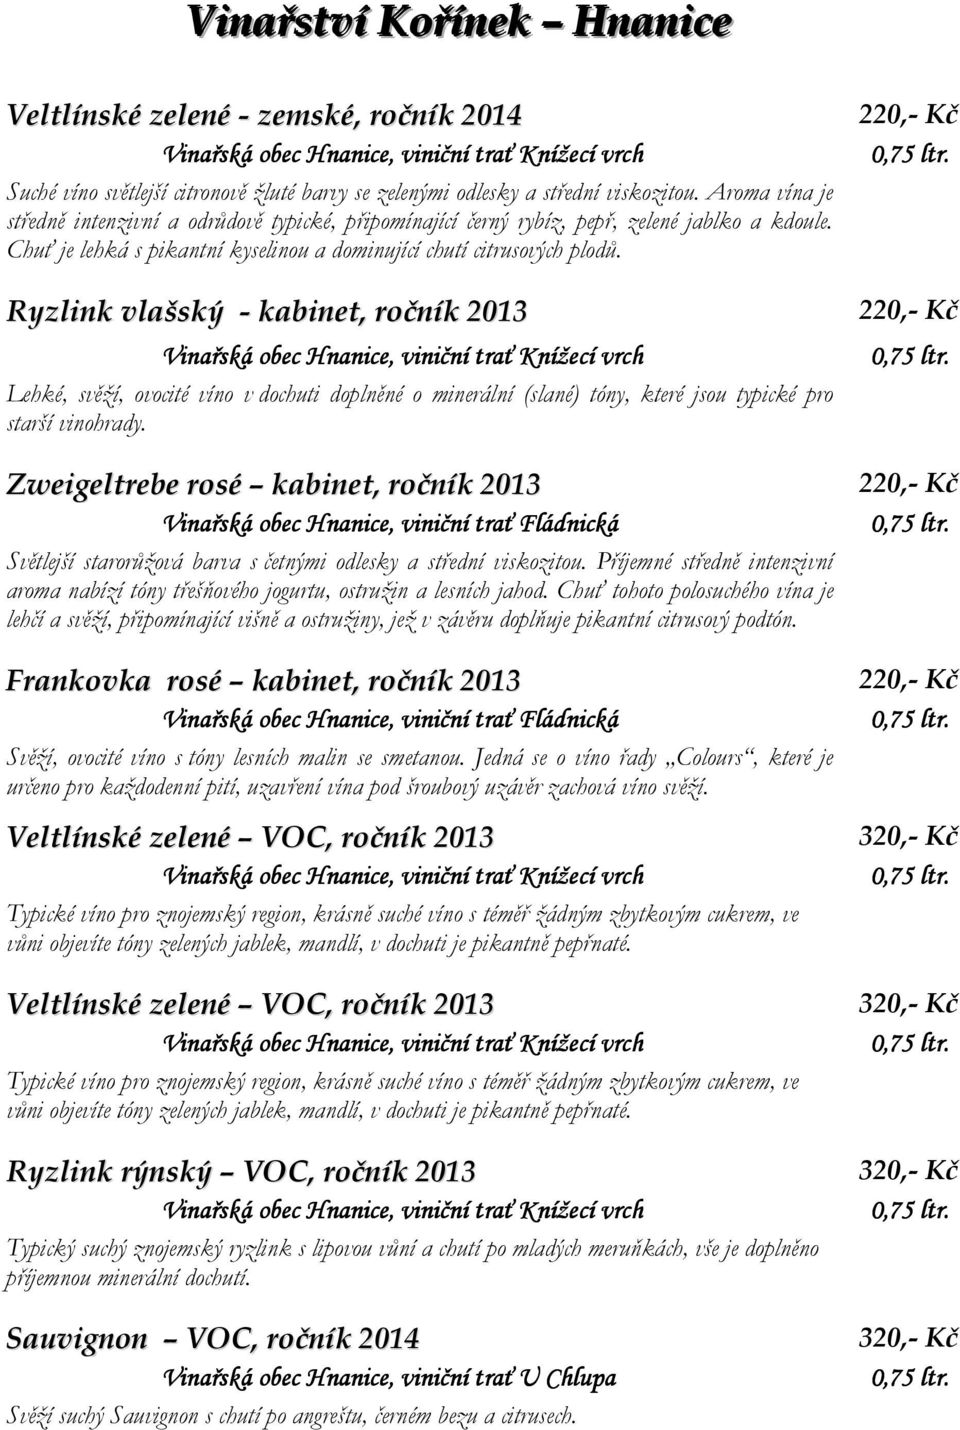 Ryzlink vlašský - kabinet, ročník 2013 Lehké, svěží, ovocité víno v dochuti doplněné o minerální (slané) tóny, které jsou typické pro starší vinohrady.